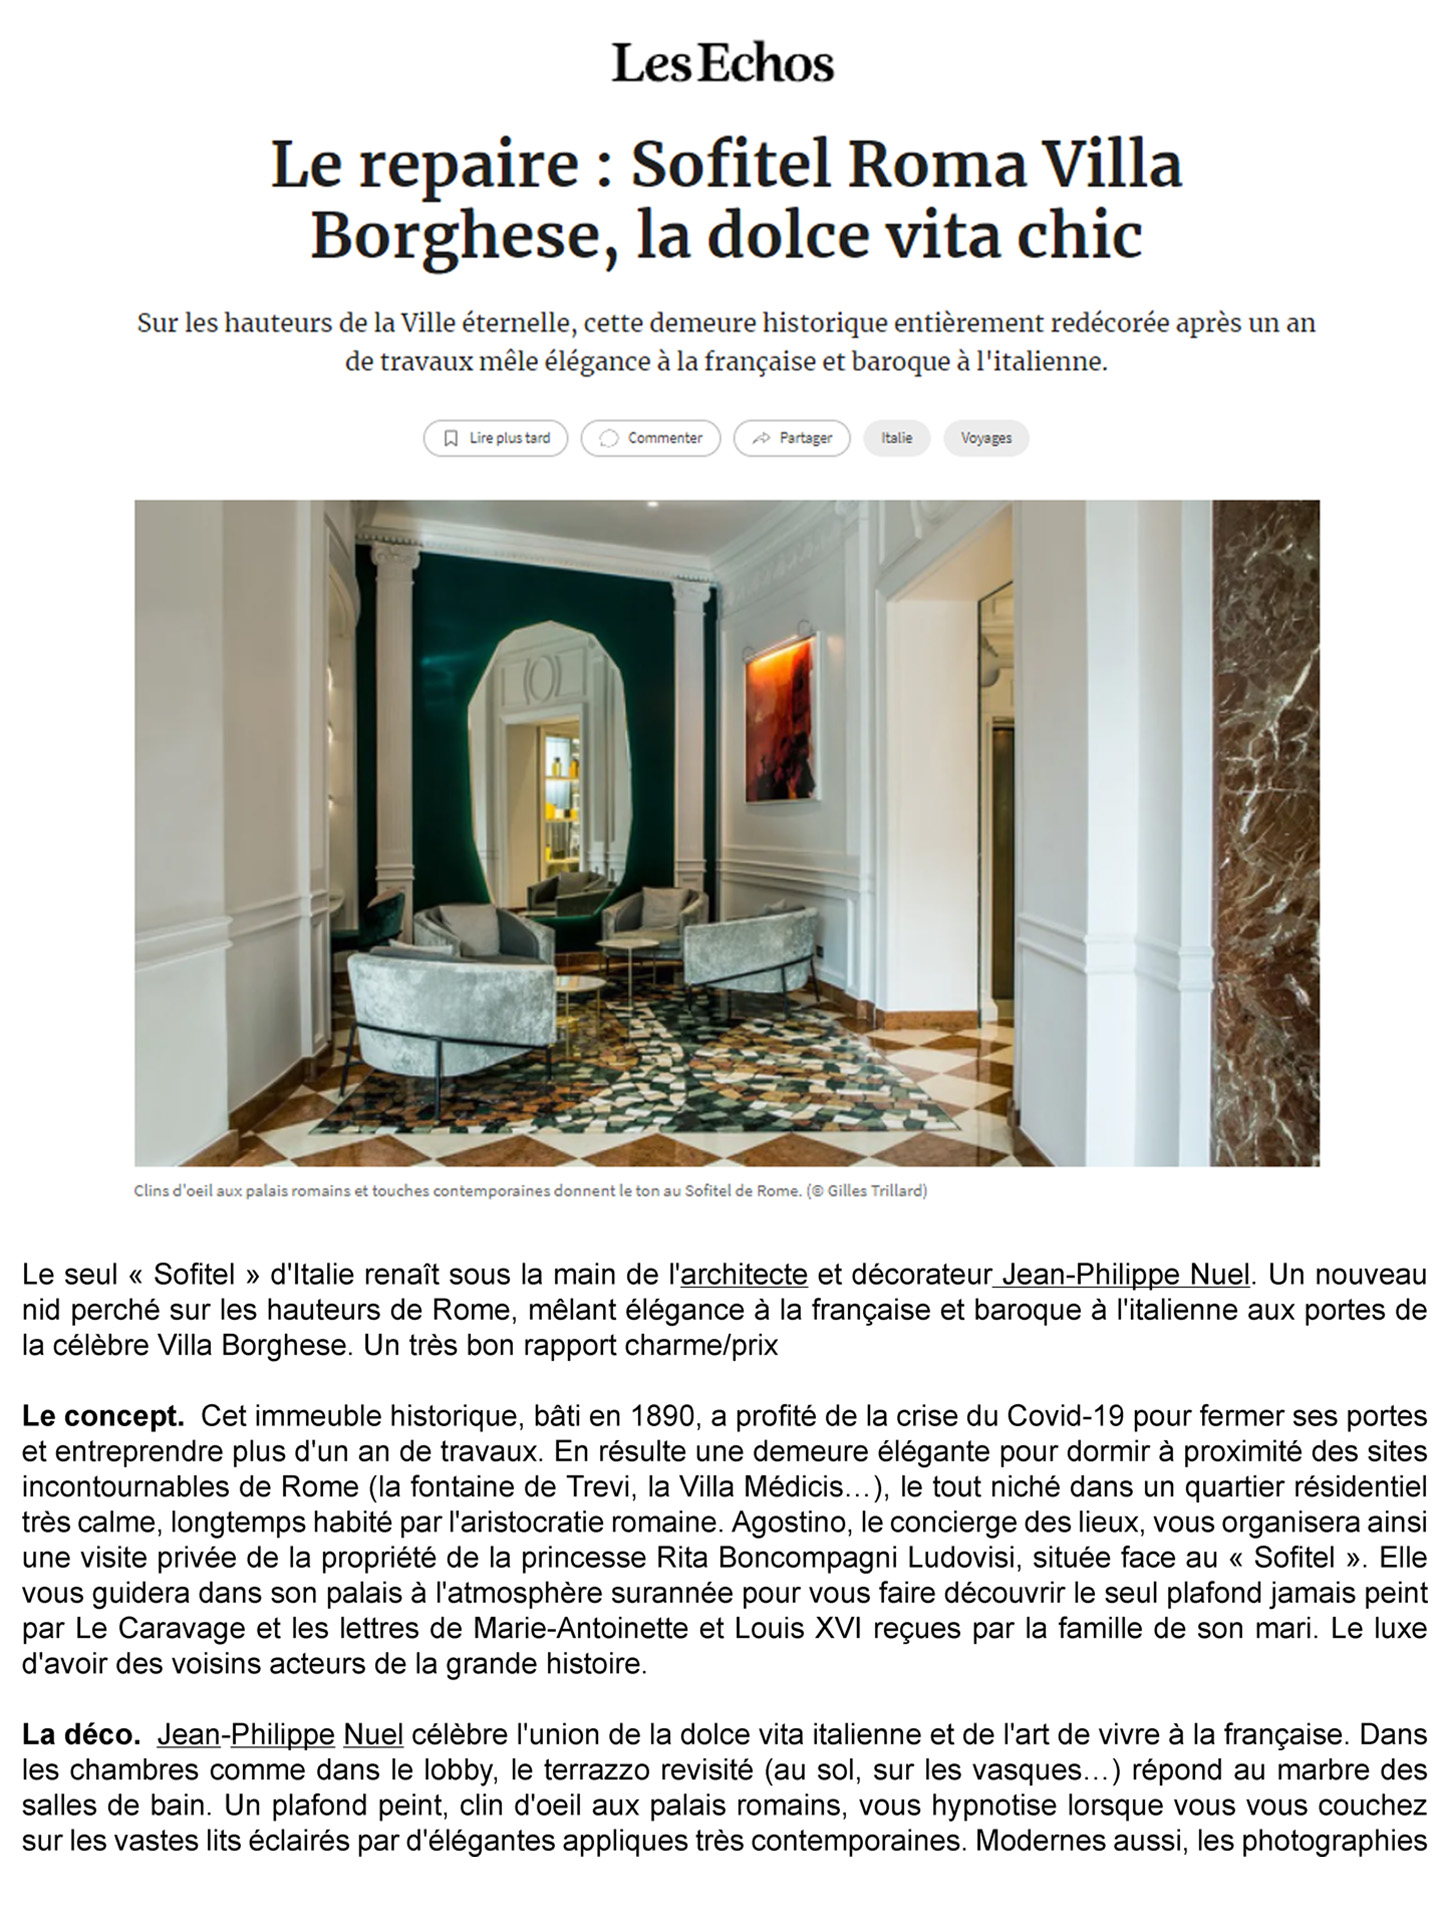 article sur le sofitel rome villa borghese dans le journal les echos, hotel de luxe en italier réalisé par le studio français jean-philippe nuel